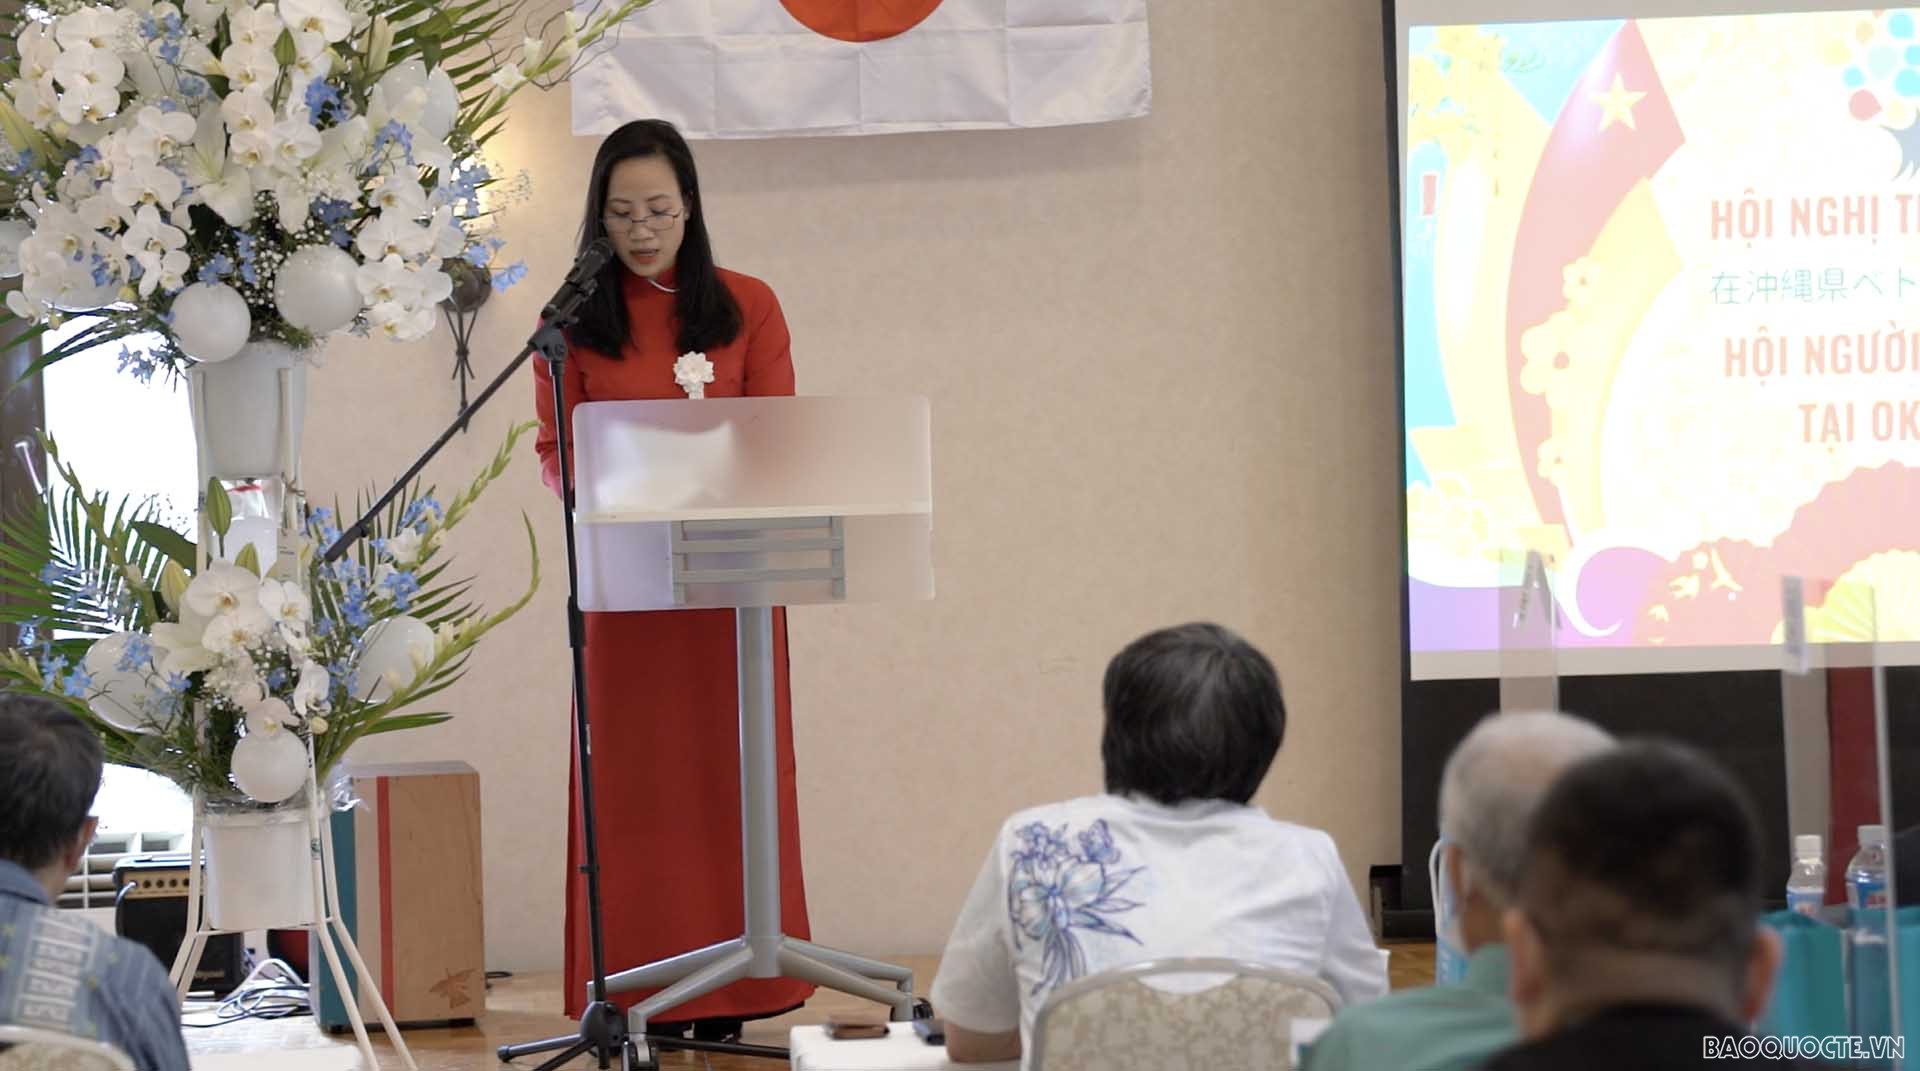 Chính thức thành lập Hội người Việt Nam tại Okinawa, Nhật Bản